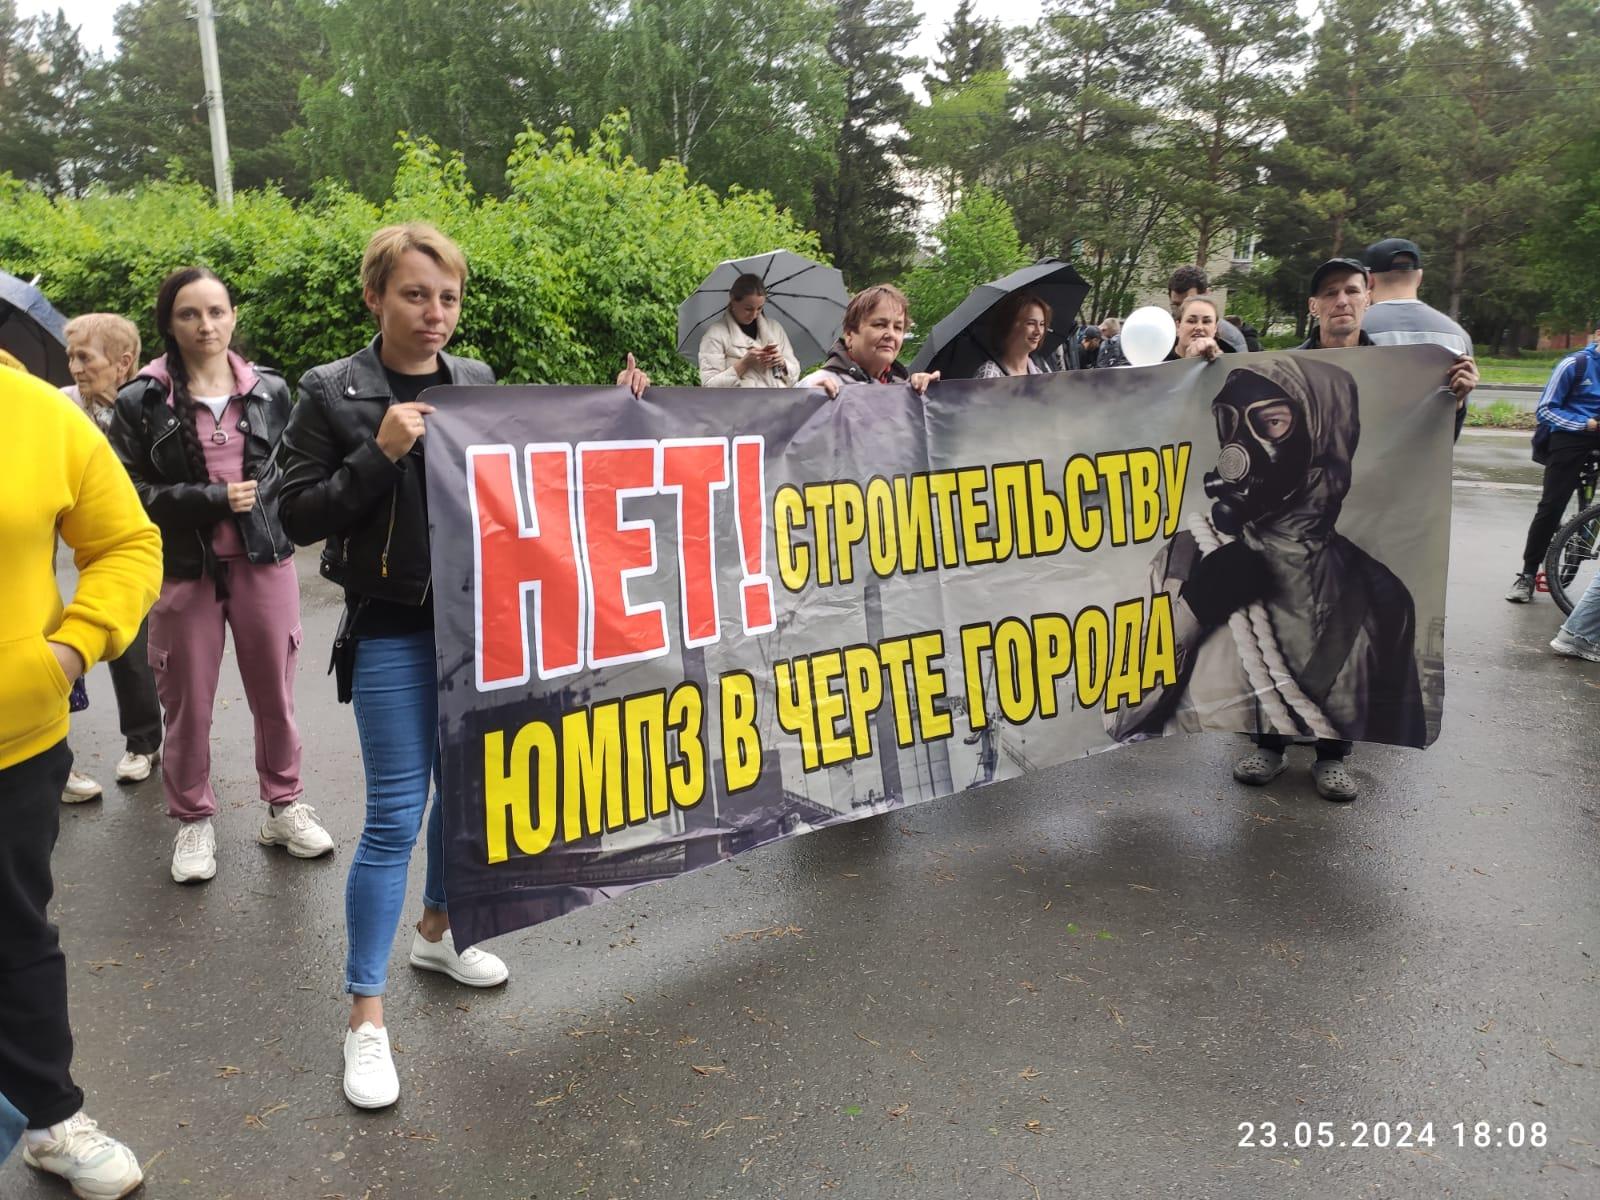 Фото В Искитиме проходит митинг против строительства металлургического завода ЮМПЗ 2